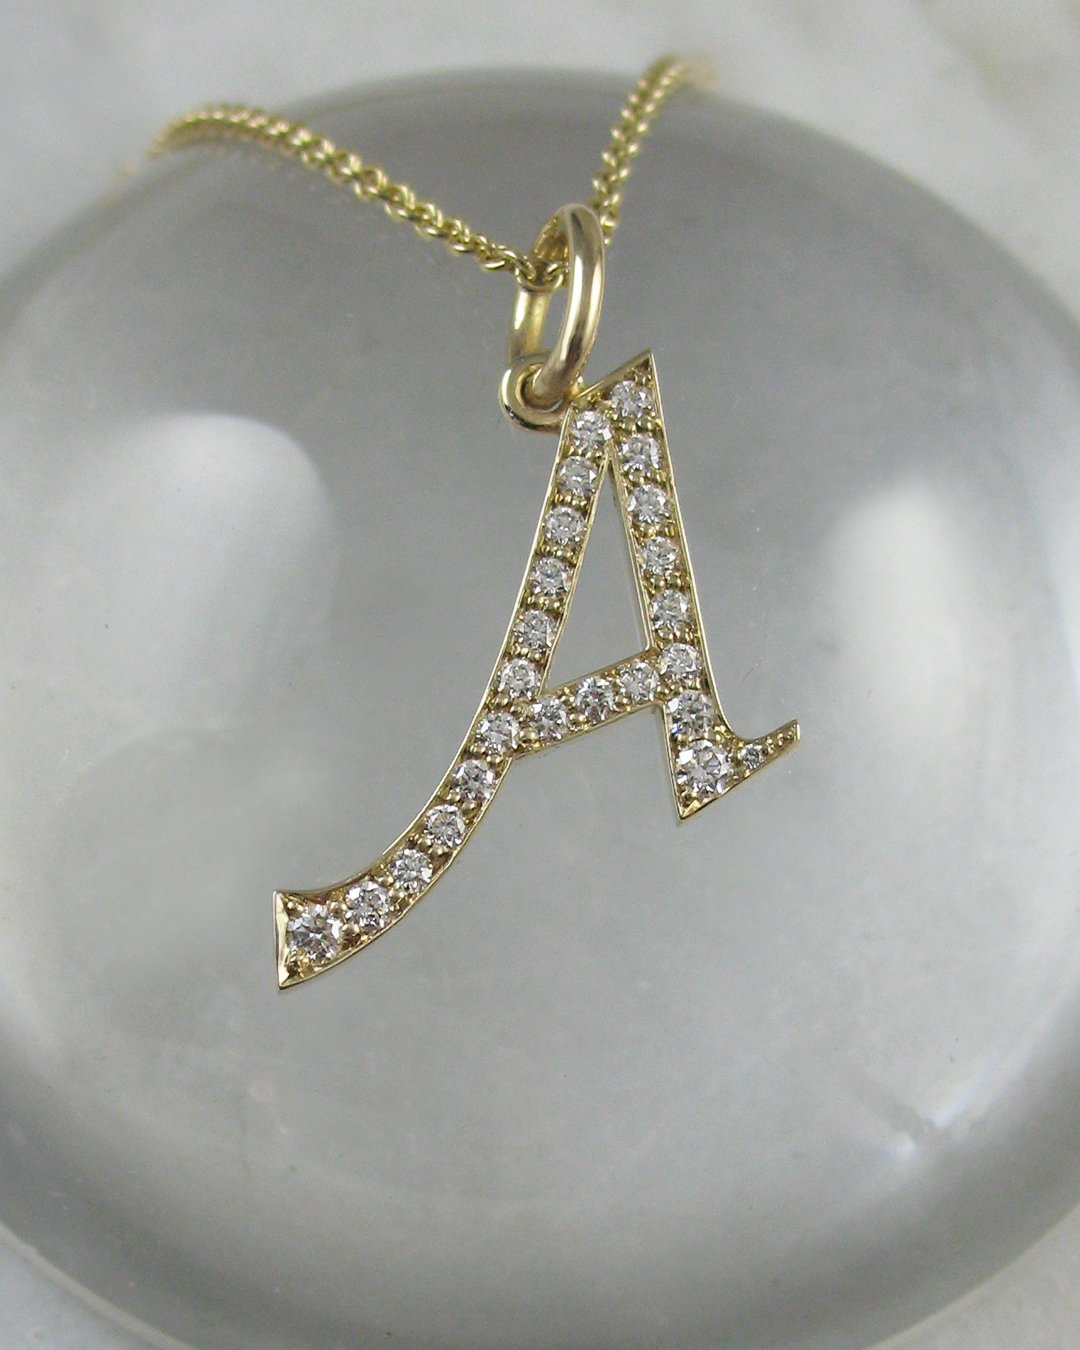 An elegant custom diamond letter necklace